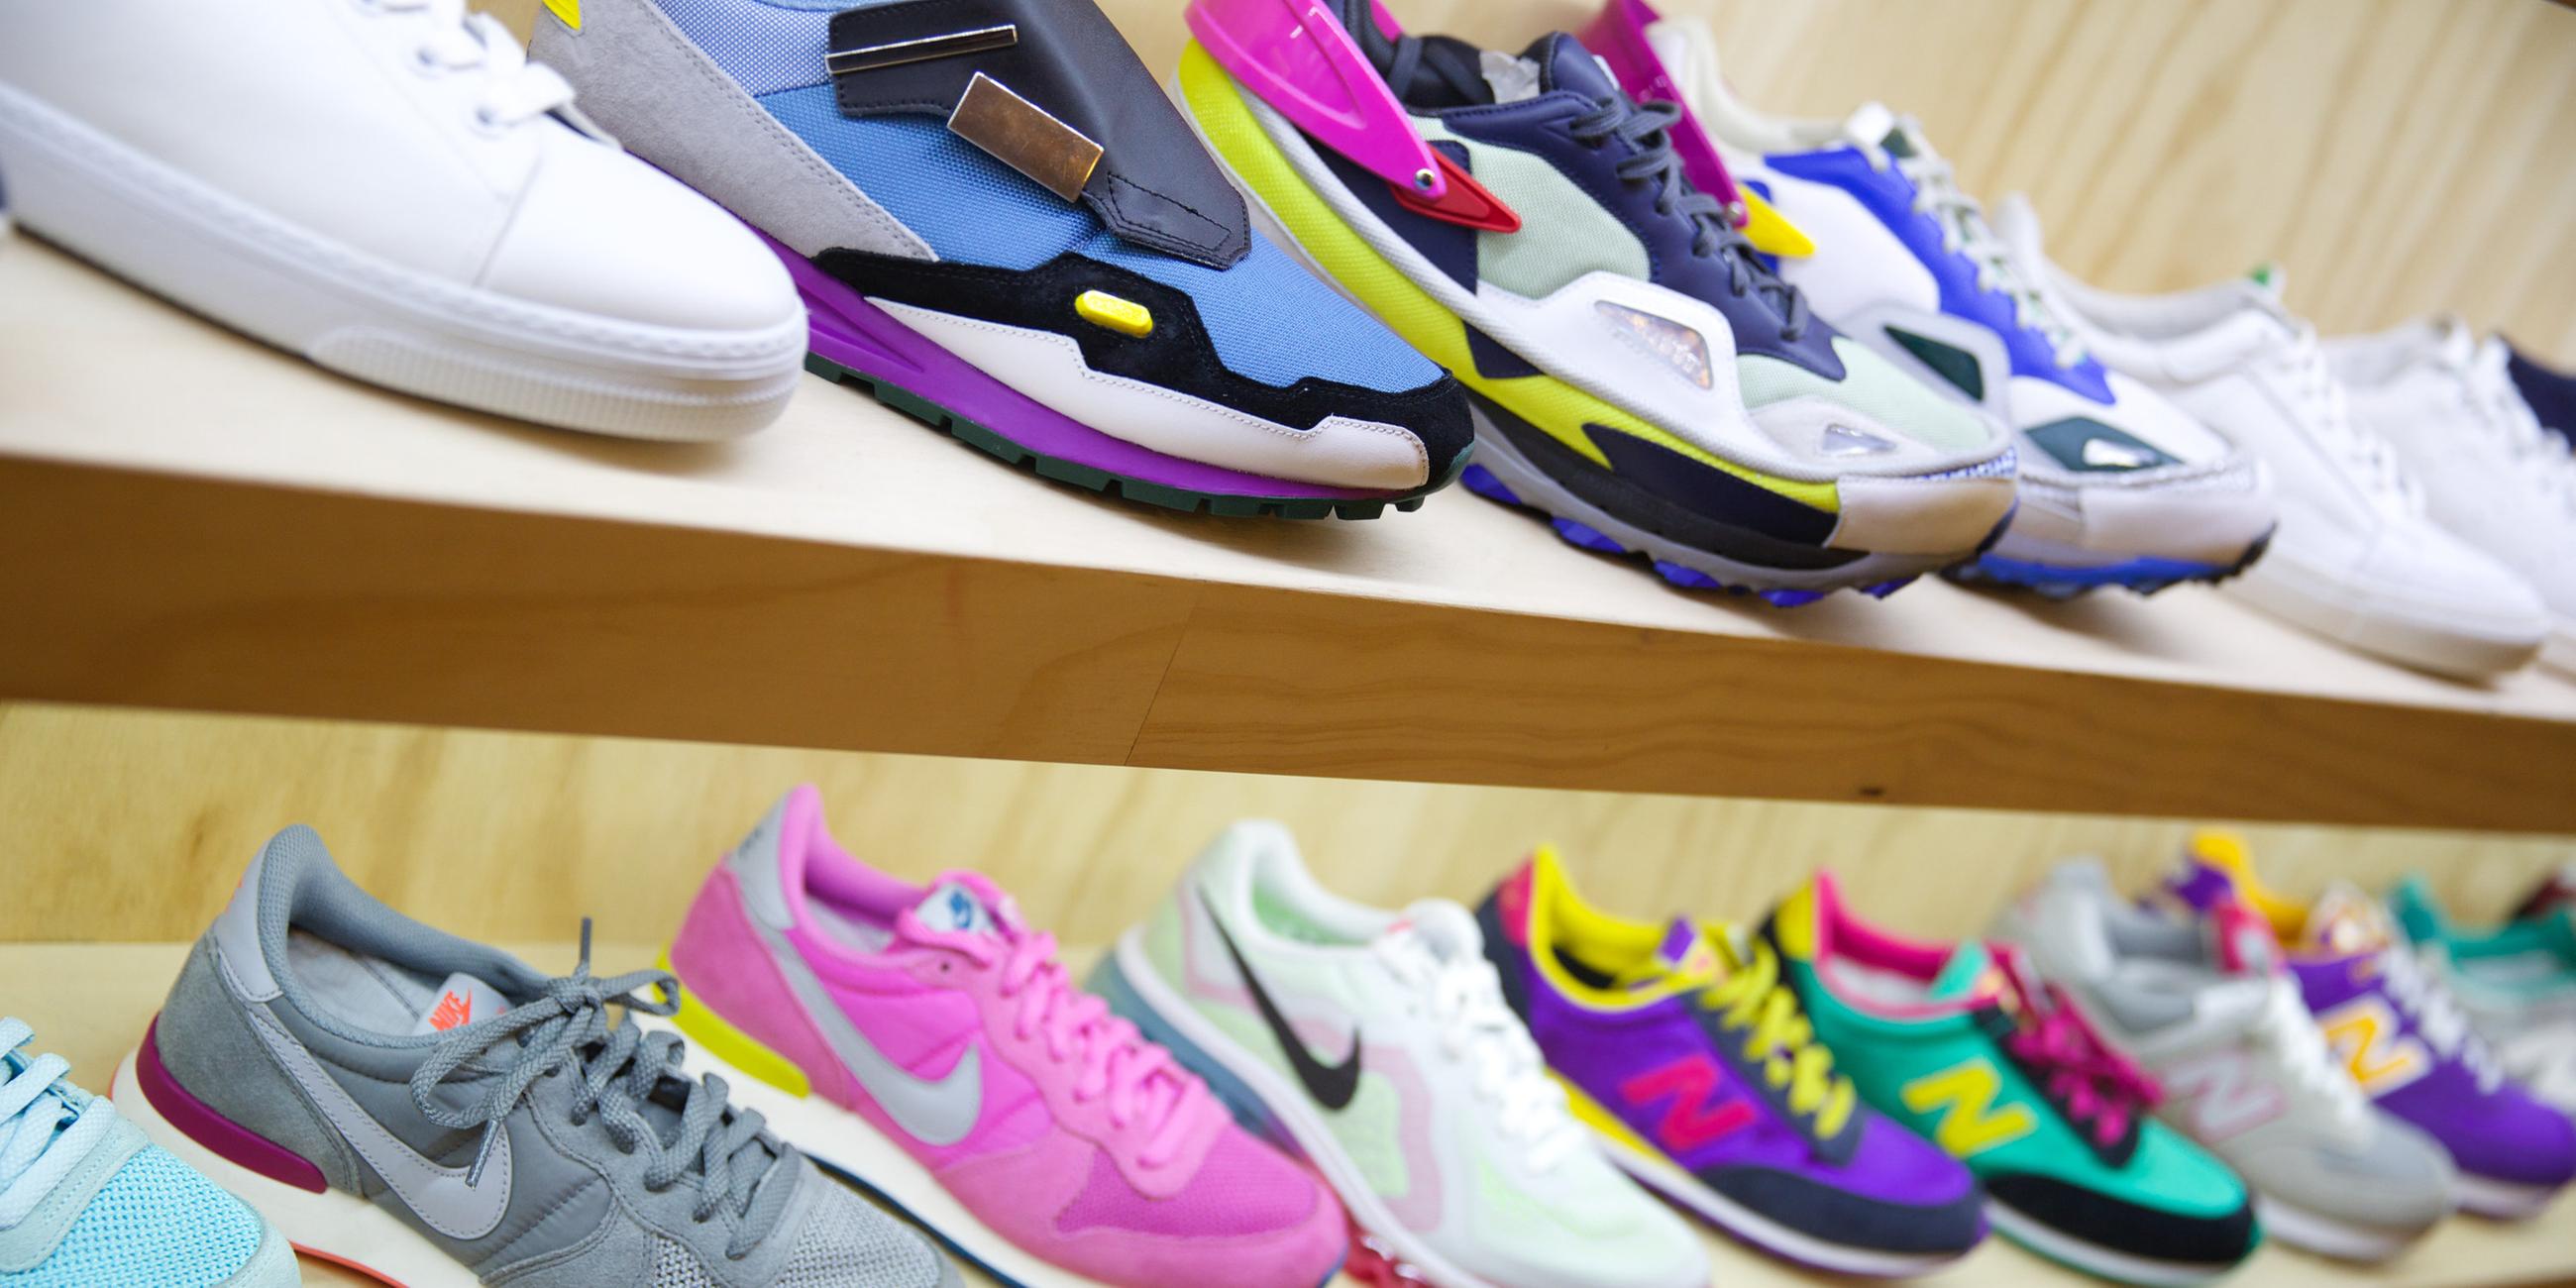 Archiv: Zahlreiche Sneaker im Ladenregal, am 26.03.2014 